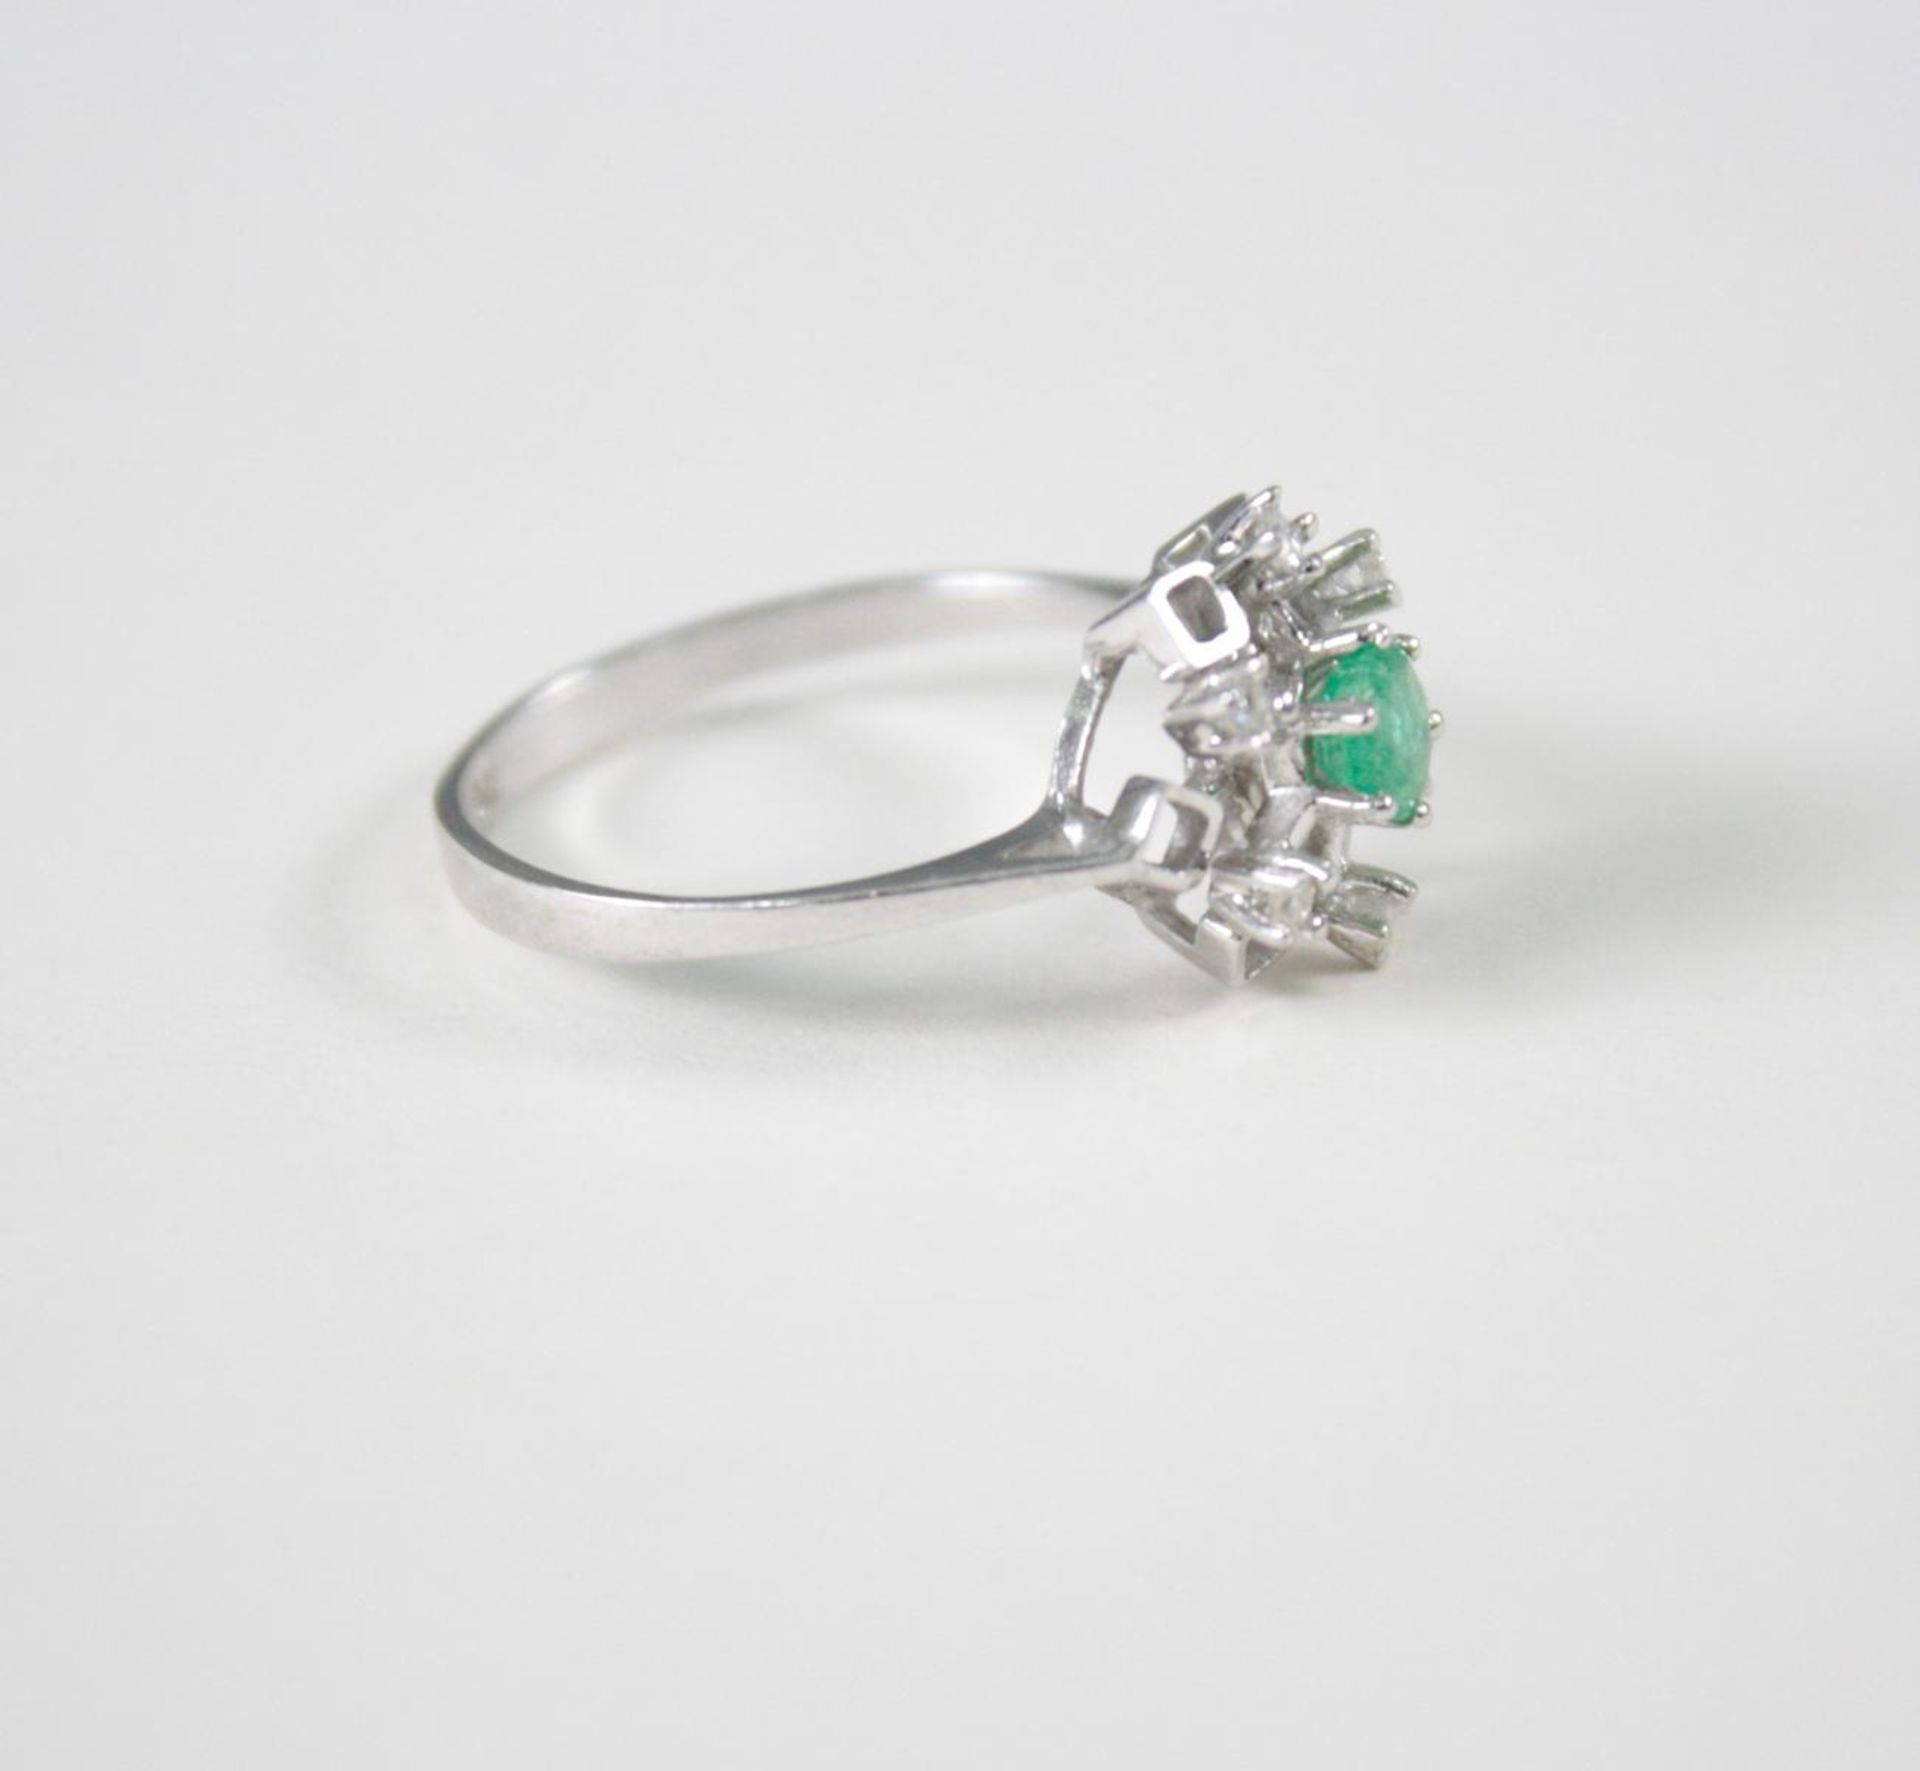 Damenring mit Smaragd und Diamanten, 14 Karat Weißgold1 Smaragd im Diamantschliff von ca 0,30 Karat, - Bild 2 aus 3